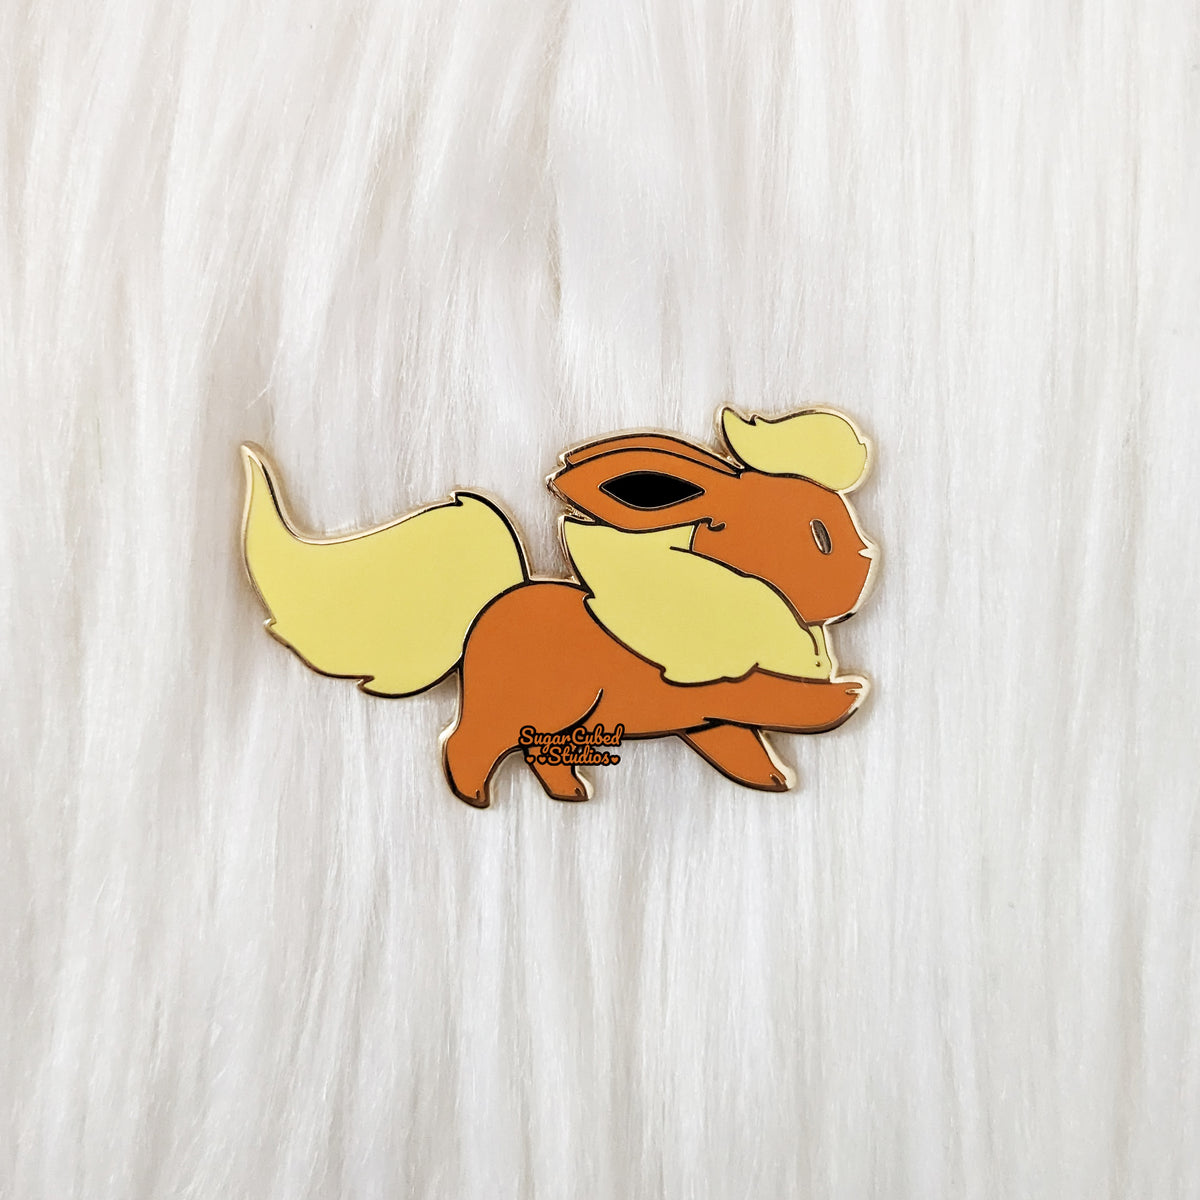 Ditto As Pikachu, Eevee, Vaporeon, Jolteon & Flareon Pokémon Pins